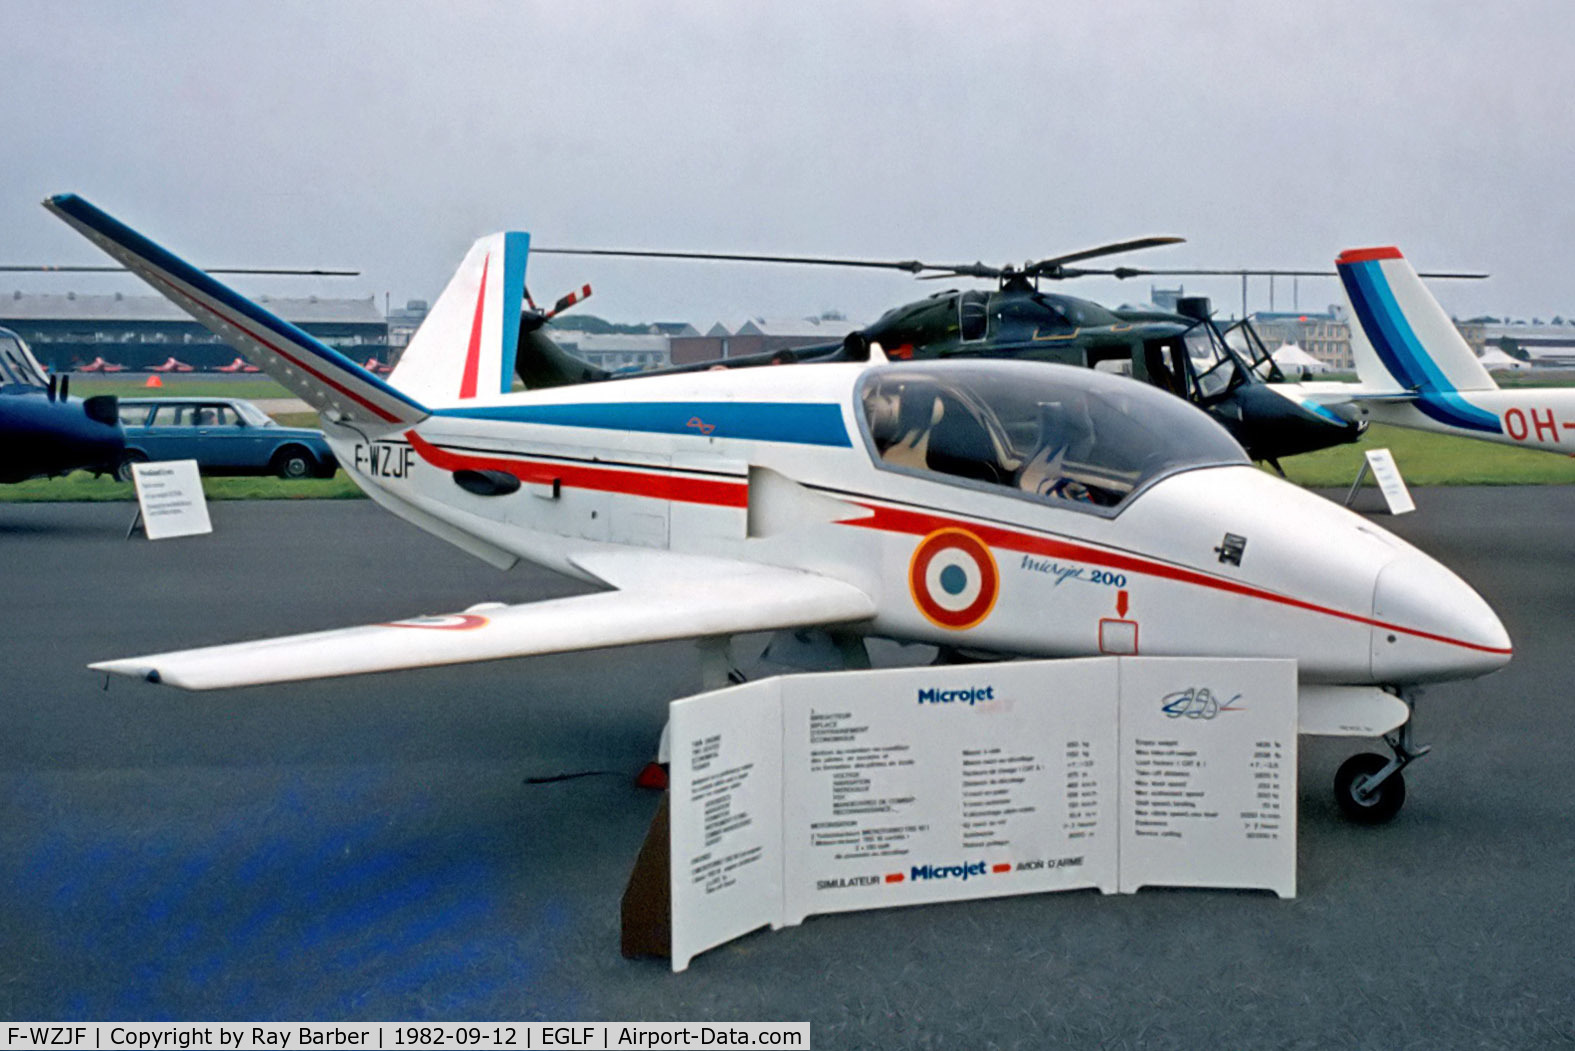 F-WZJF, 1980 Microturbo Microjet 200 C/N 01, F-WZJF   Marmande Aeronautique MJ.200 Microjet [001] (Marmande Aeronautique) Farnborough~G 12/09/1982